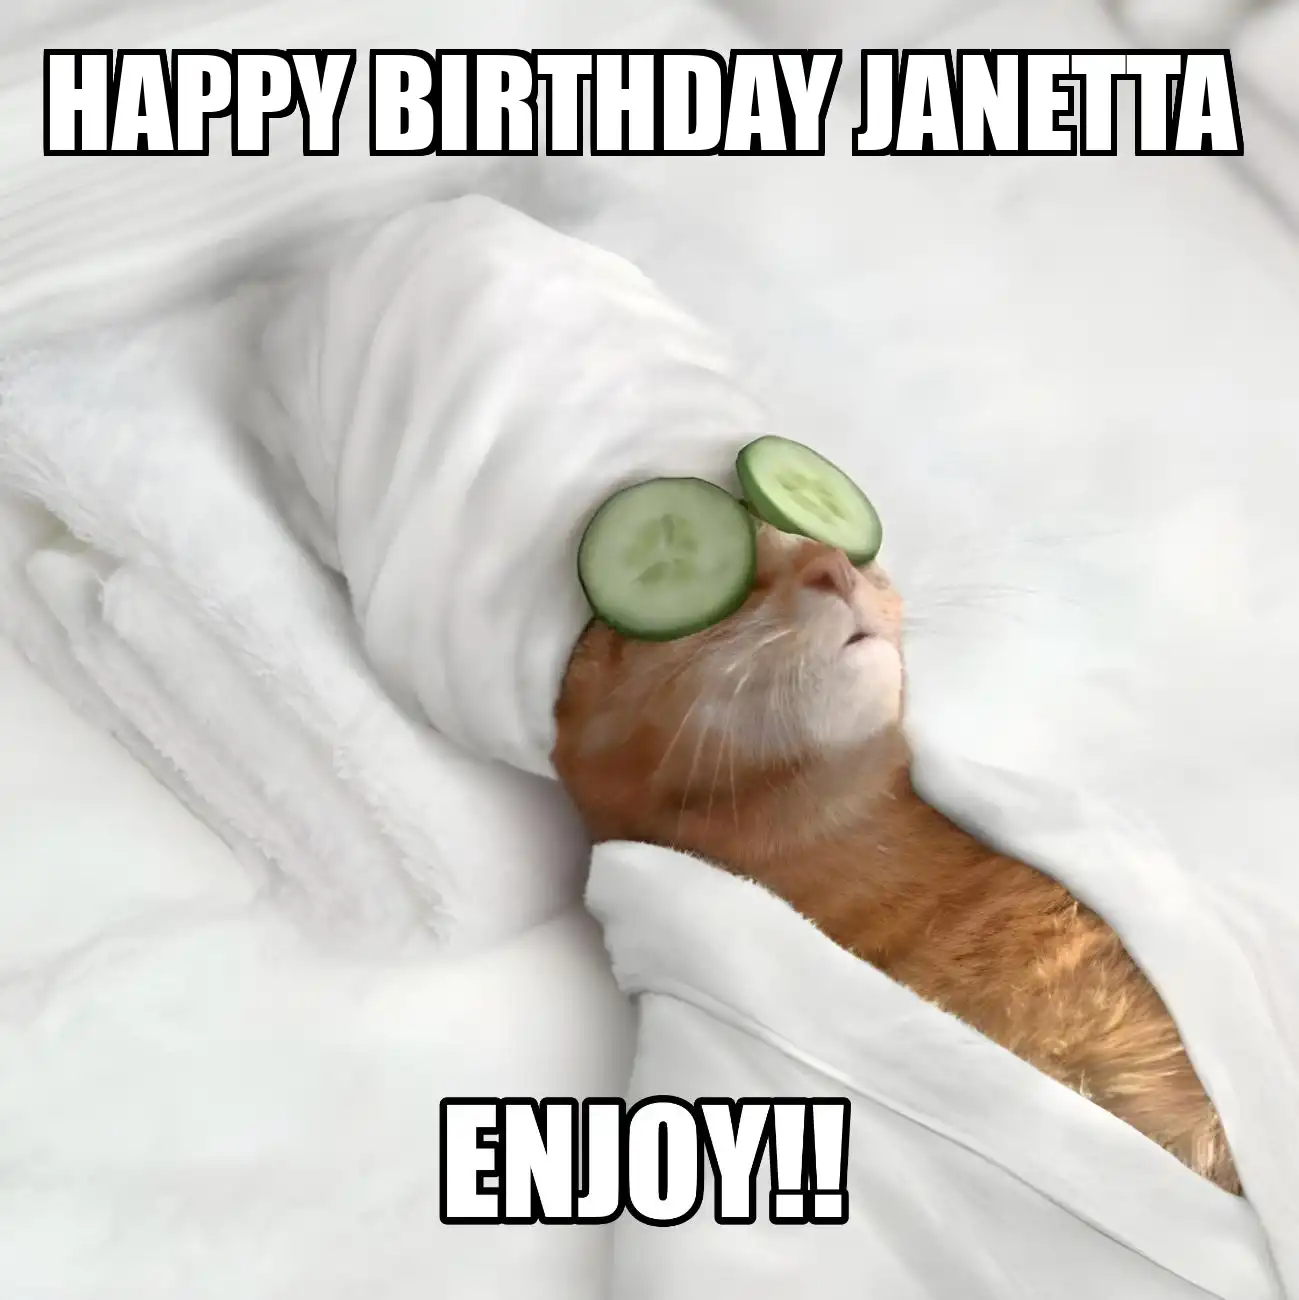 Happy Birthday Janetta Enjoy Cat Meme